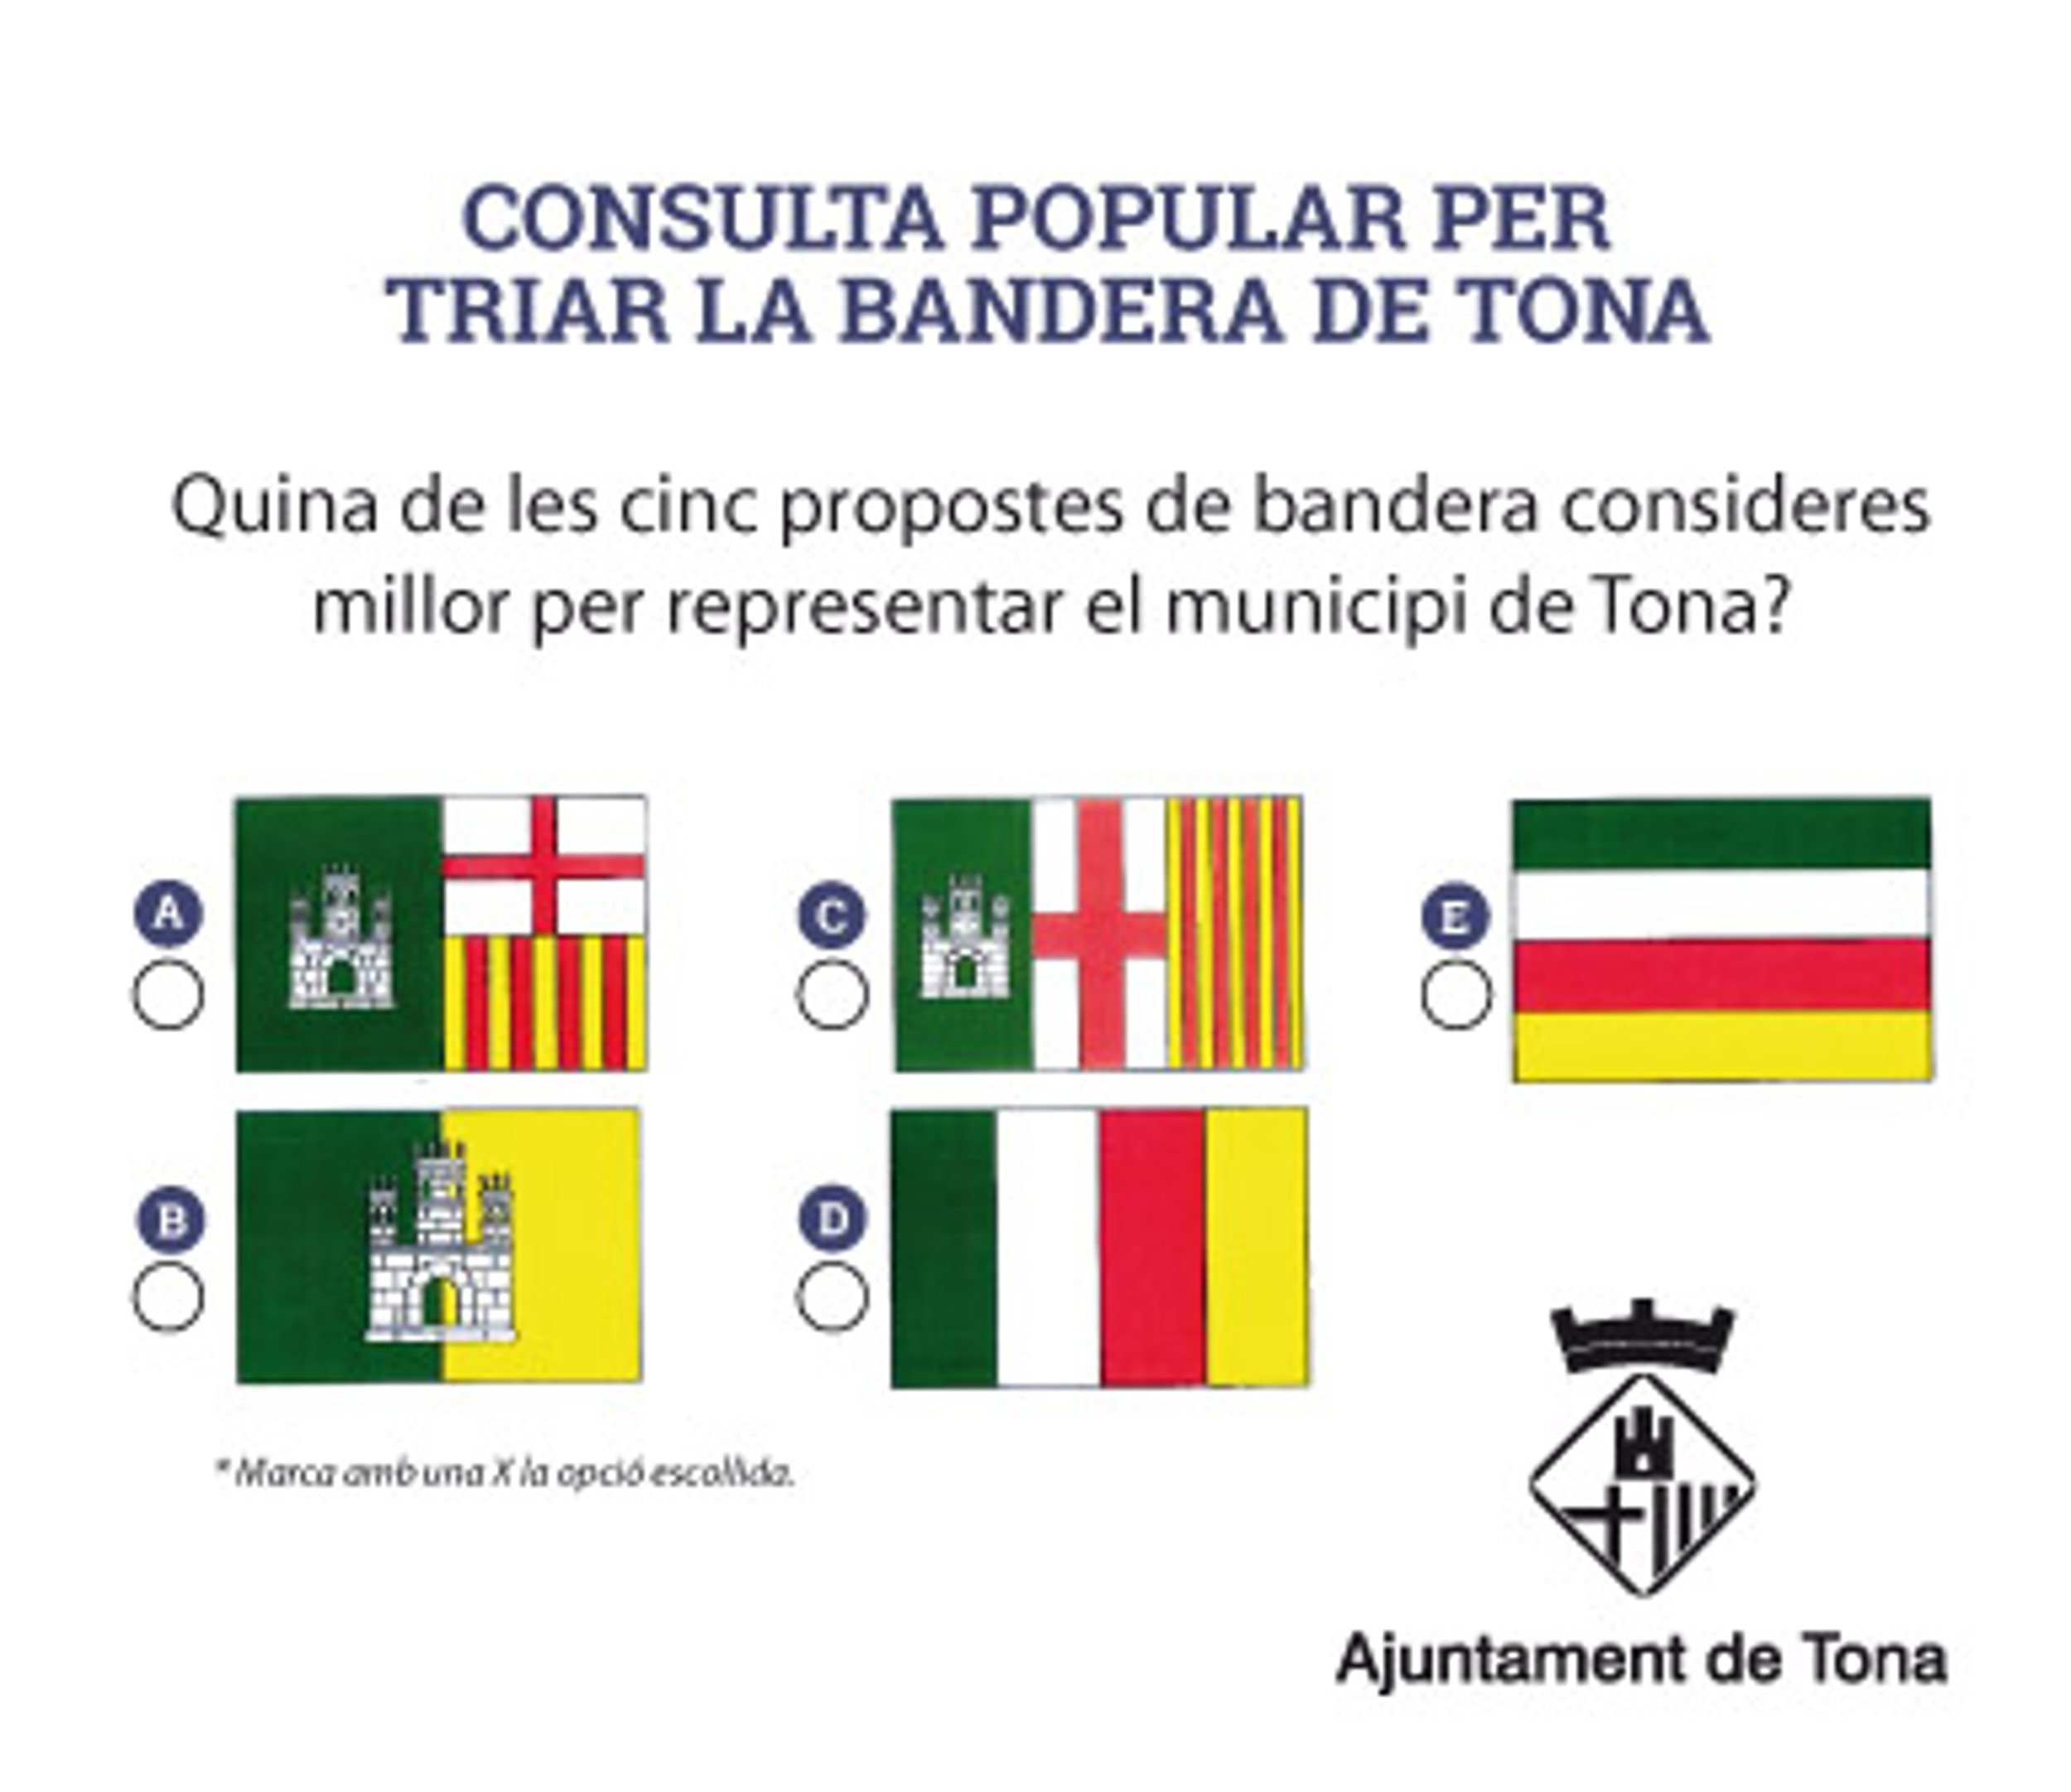 L'Estat impugna la consulta popular per triar la bandera de Tona